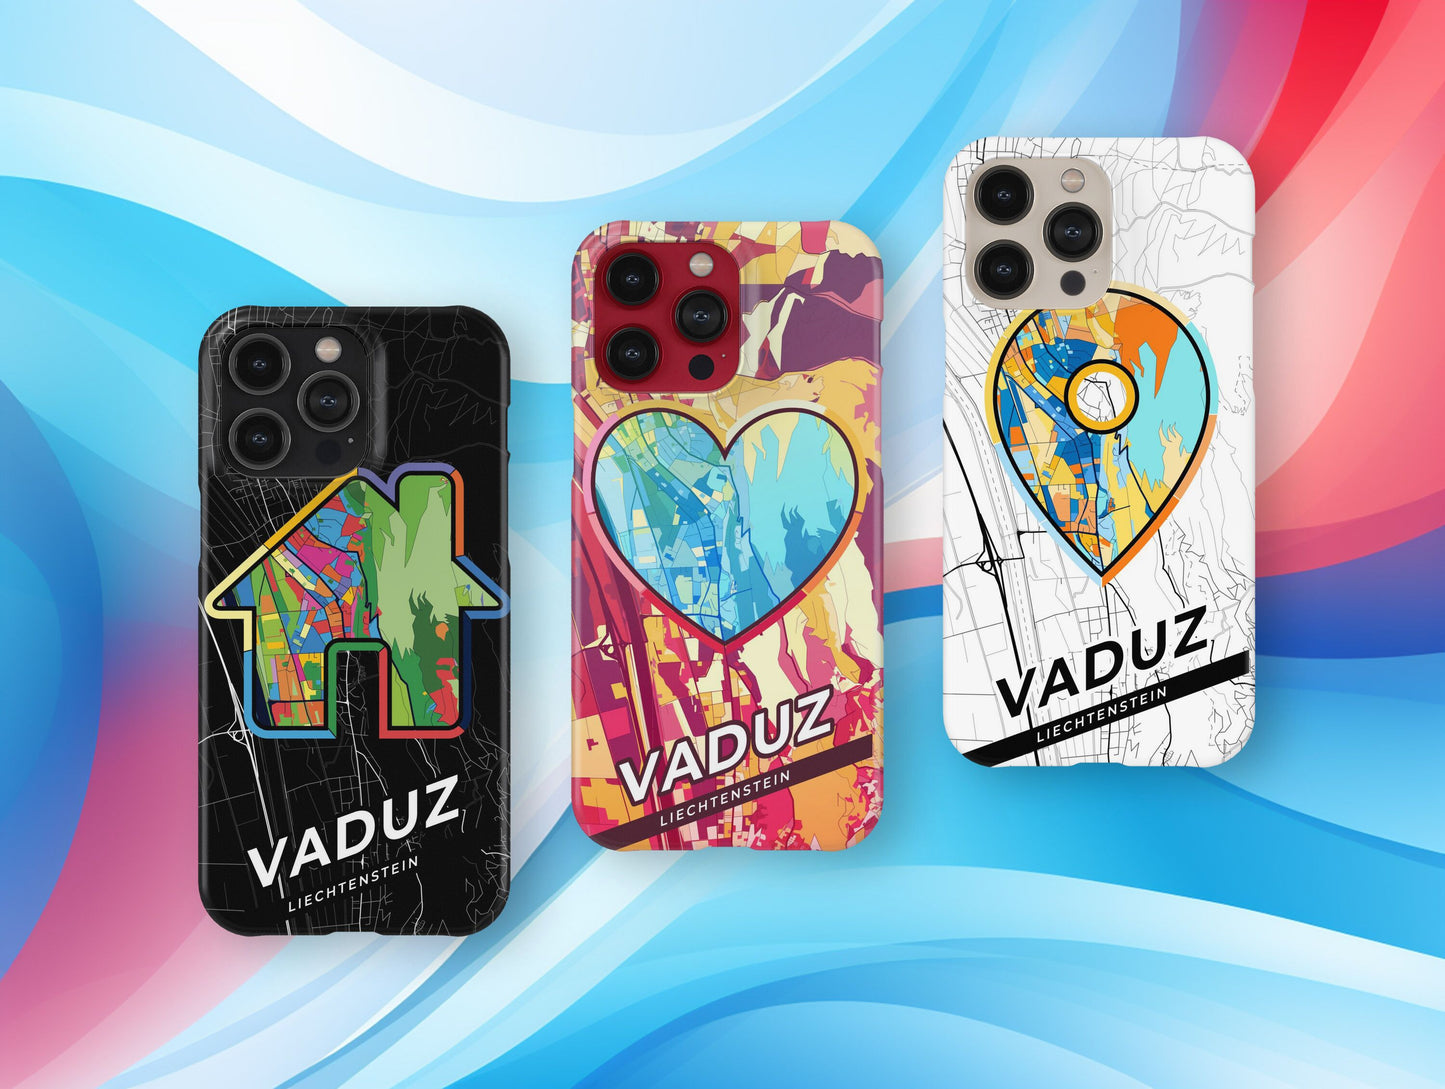 Vaduz Liechtenstein slim phone case with colorful icon